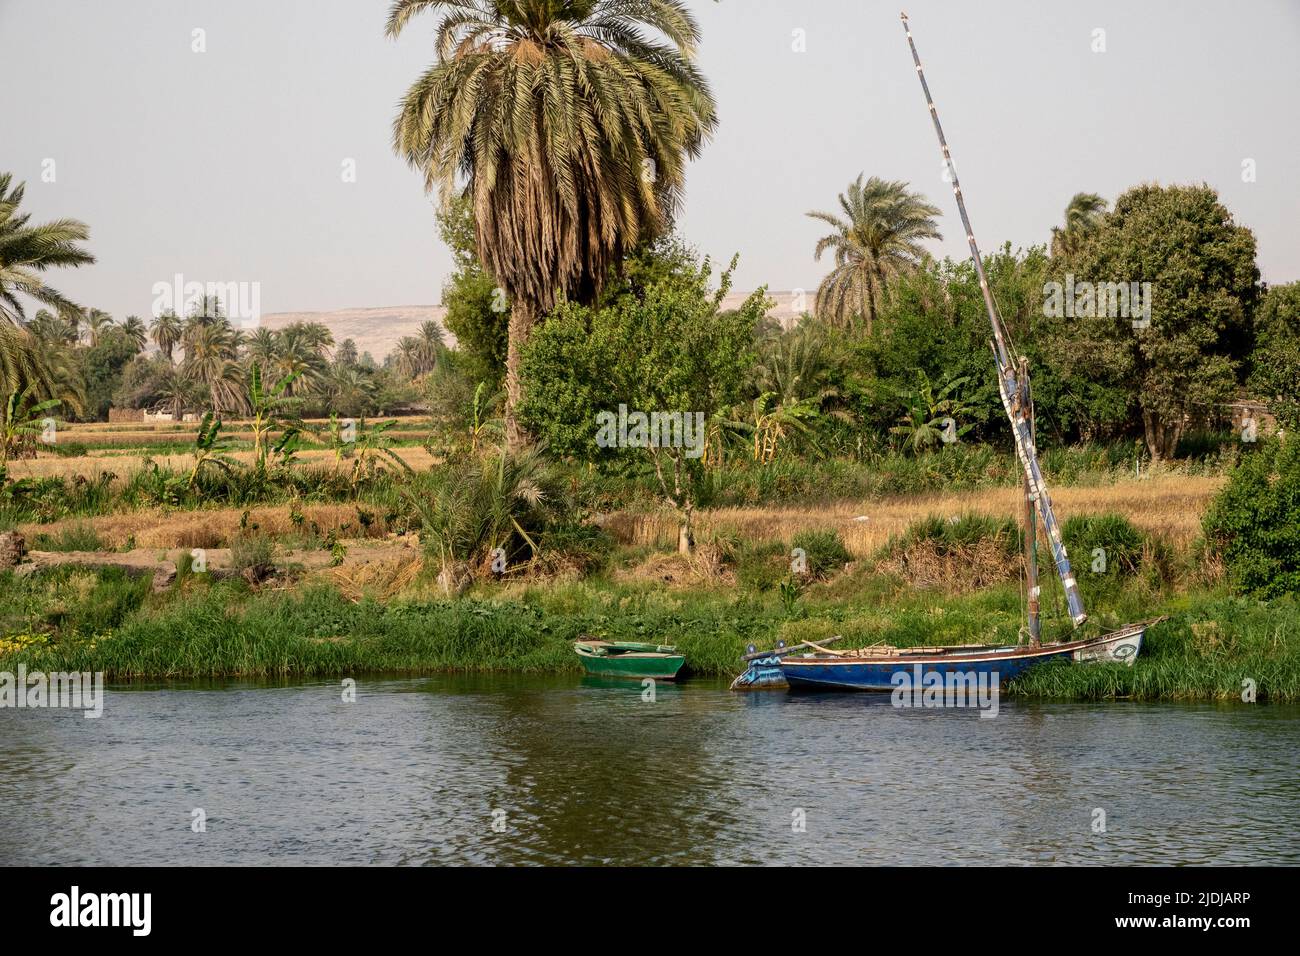 Un felucca traditionnel amarré dans les roseaux sur les rives du Nil avec la végétation et les scènes domestiques derrière Banque D'Images